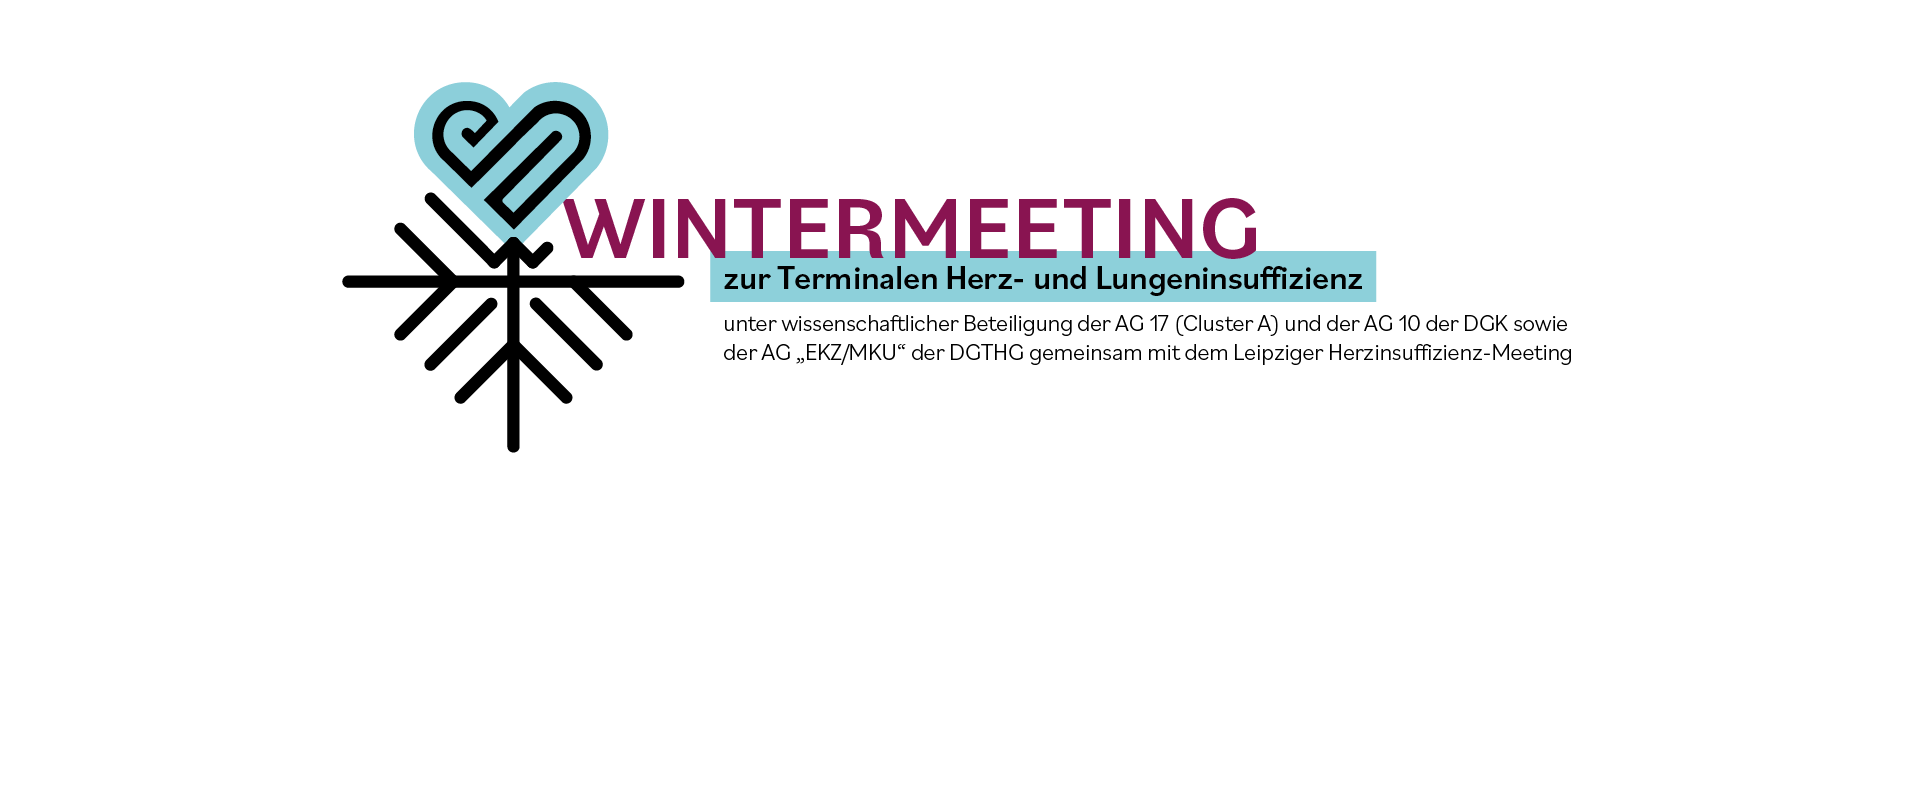 Wintermeeting — WinterMeeting